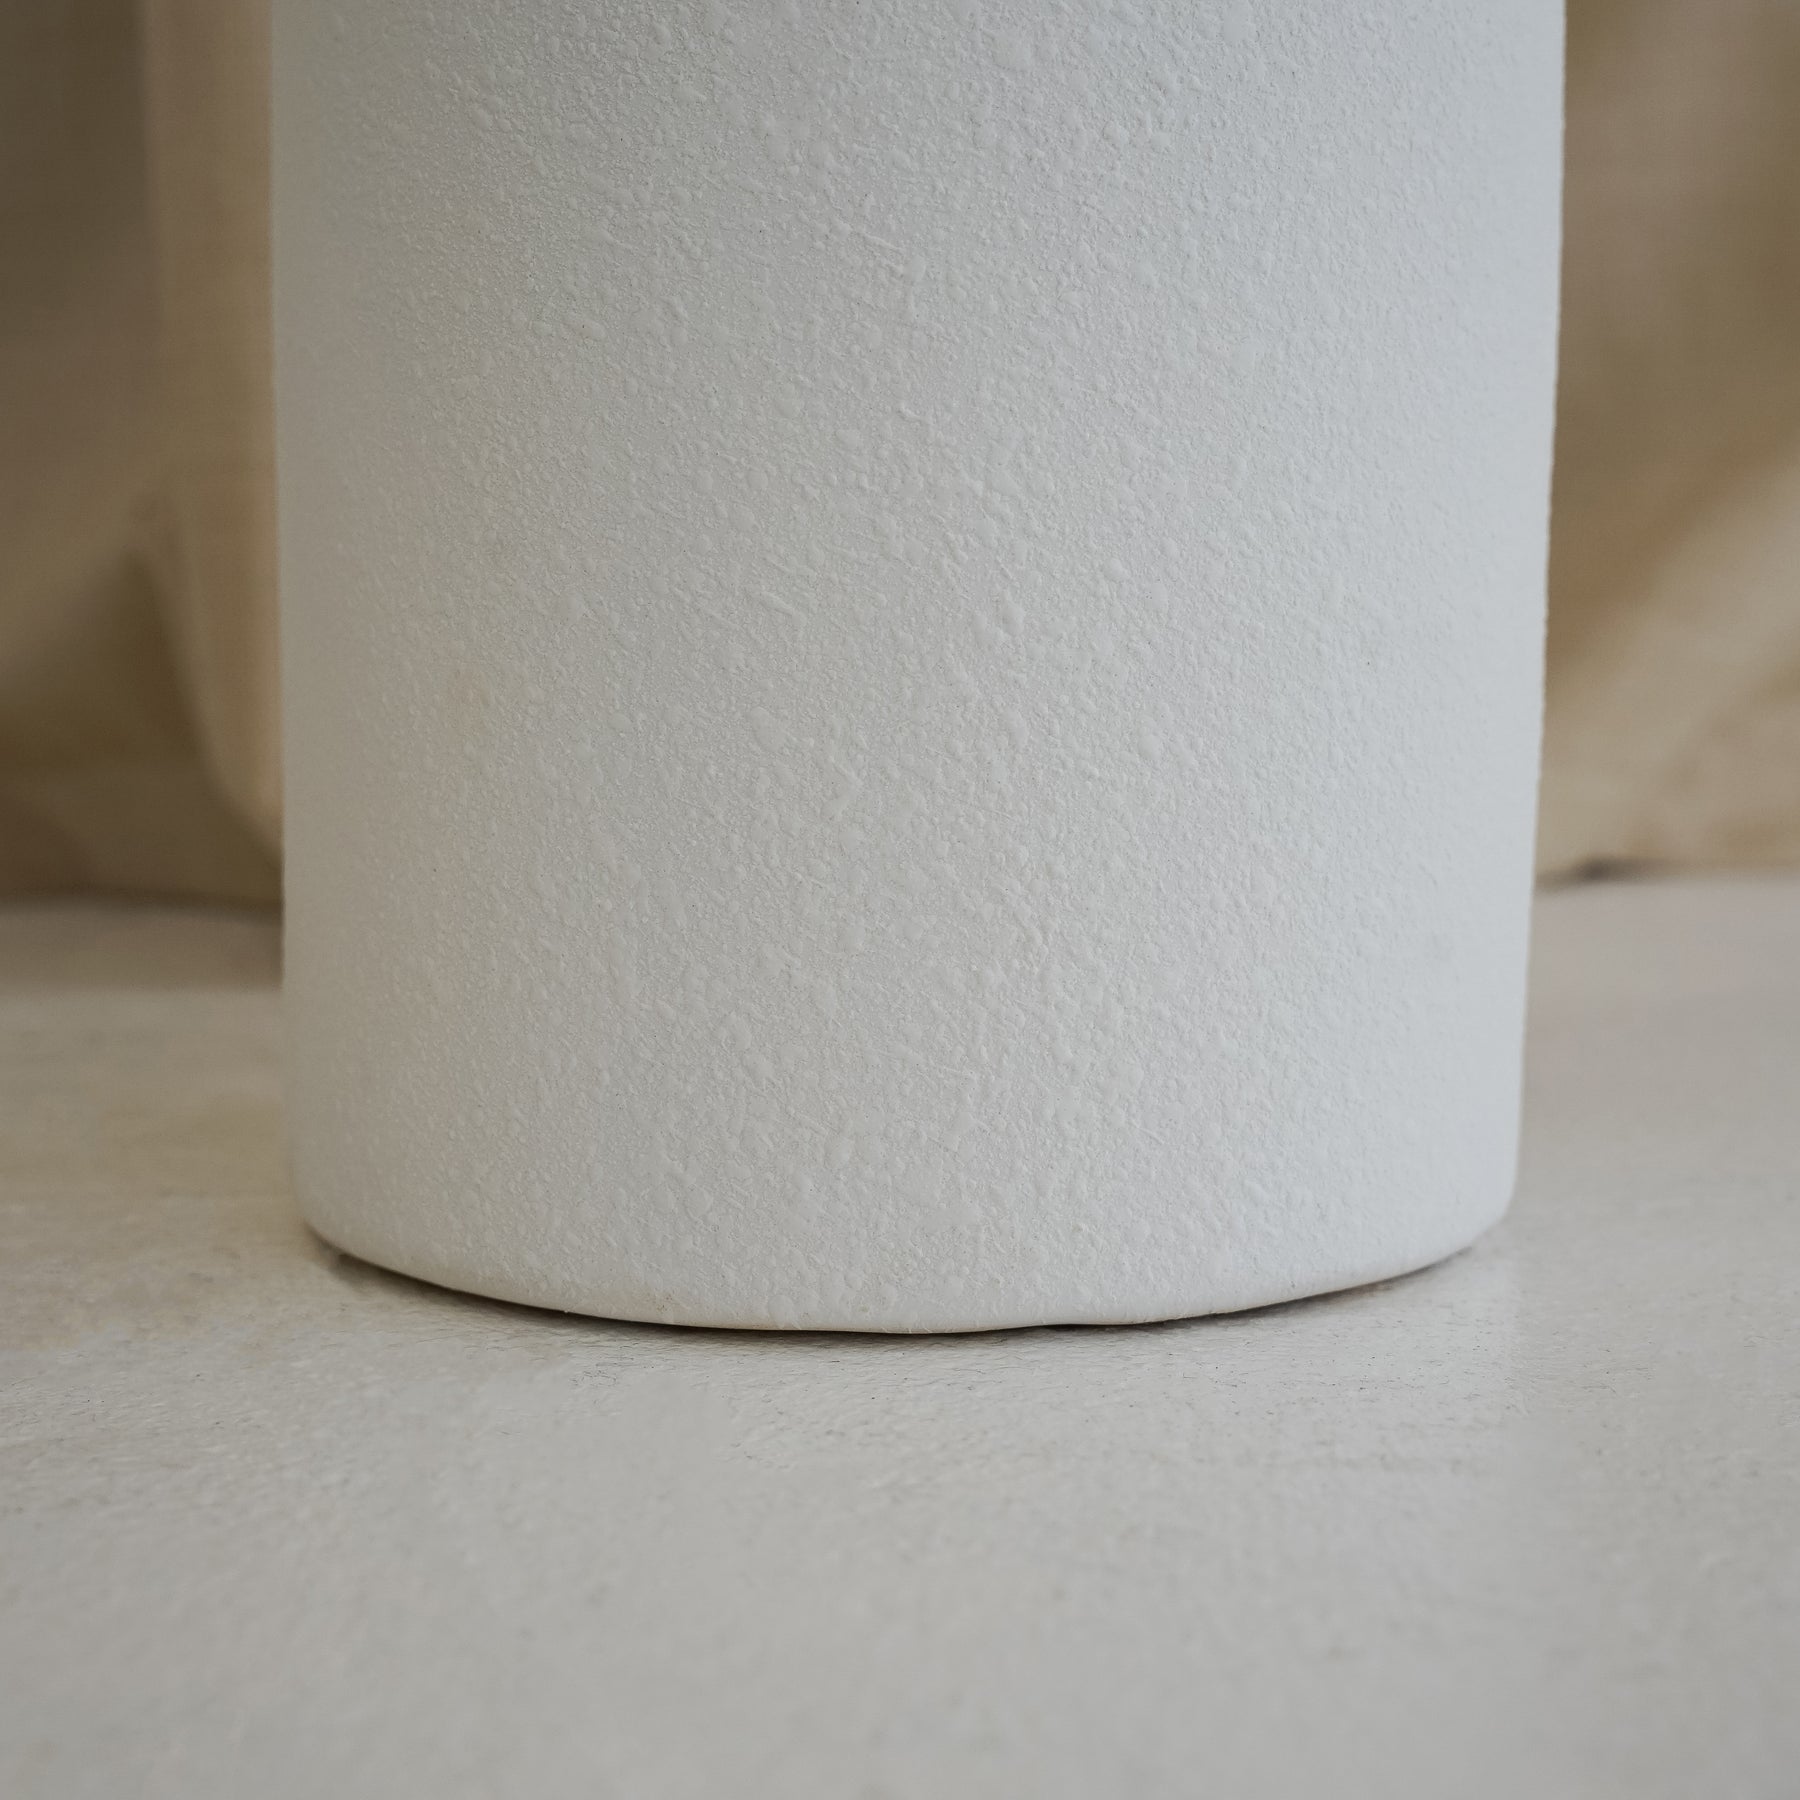 White textured ceramic large vase detail shot of base